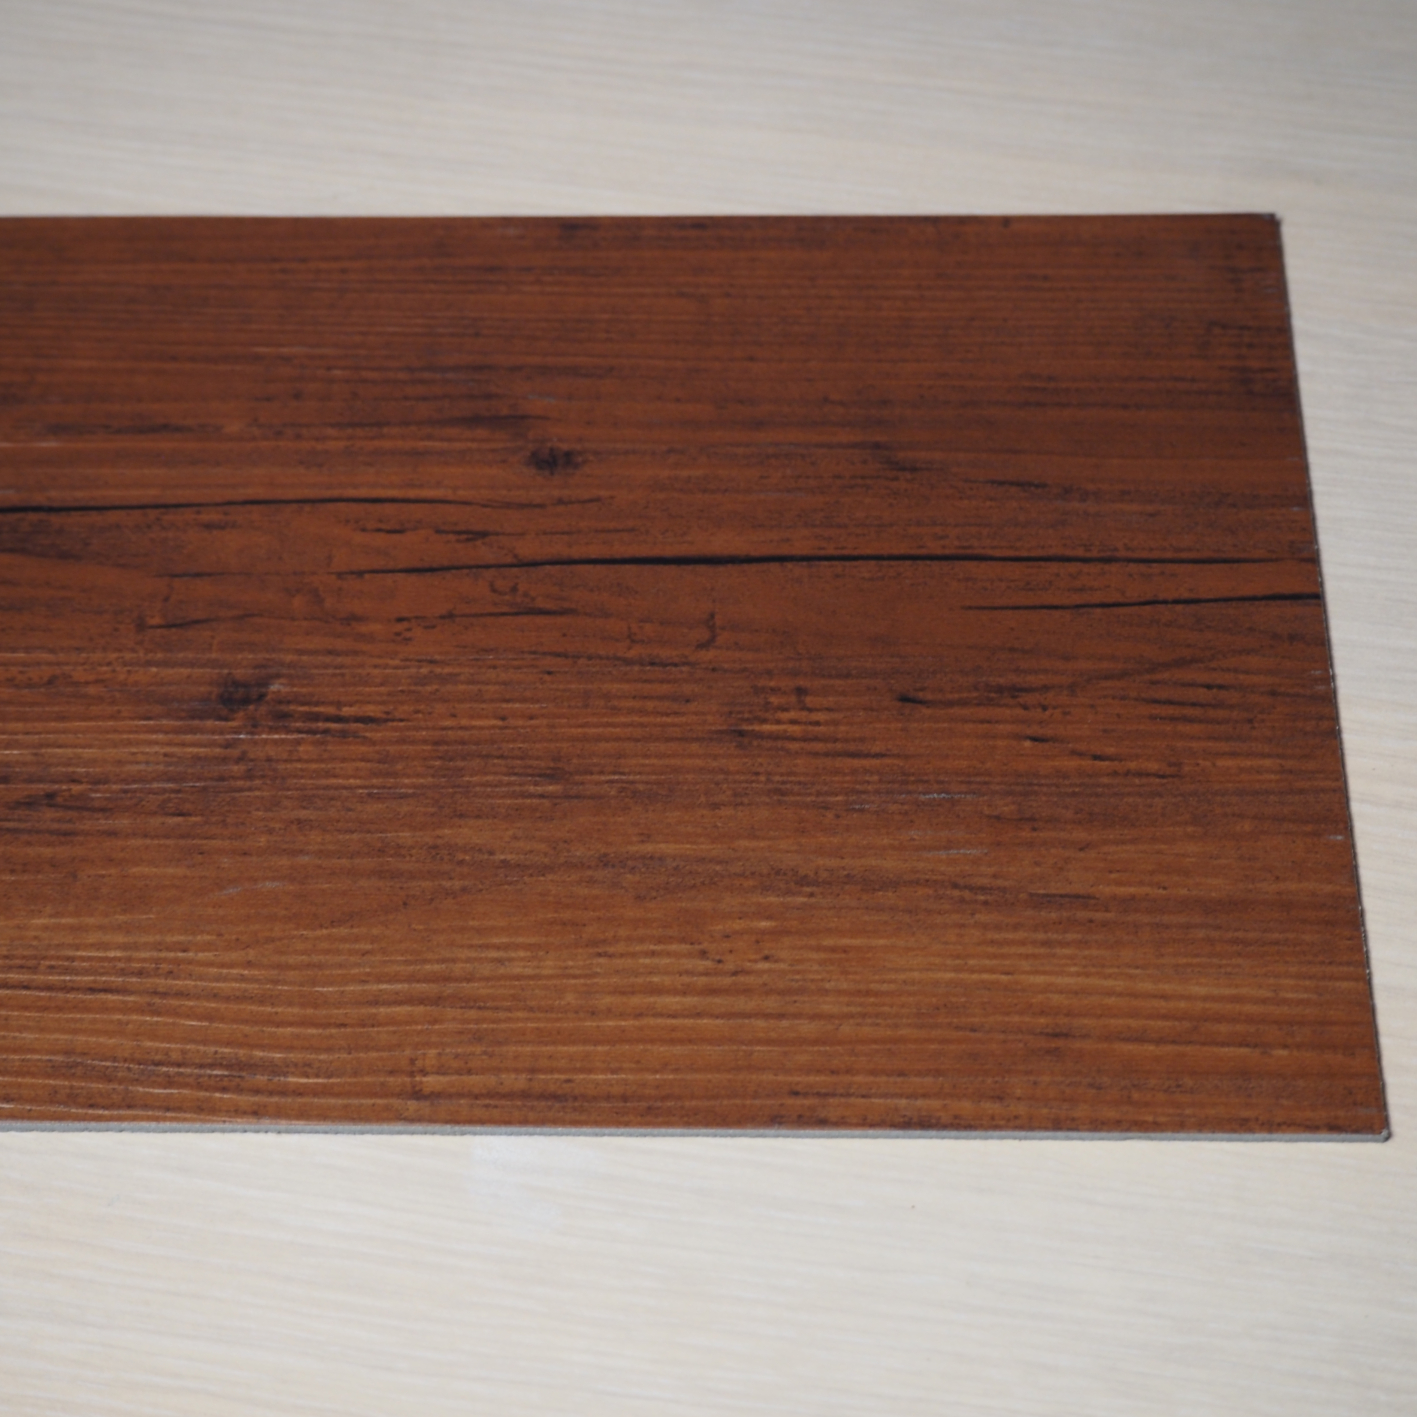 Luxury vinyl flooring by Adore - Rustic oak (4.89 m2)